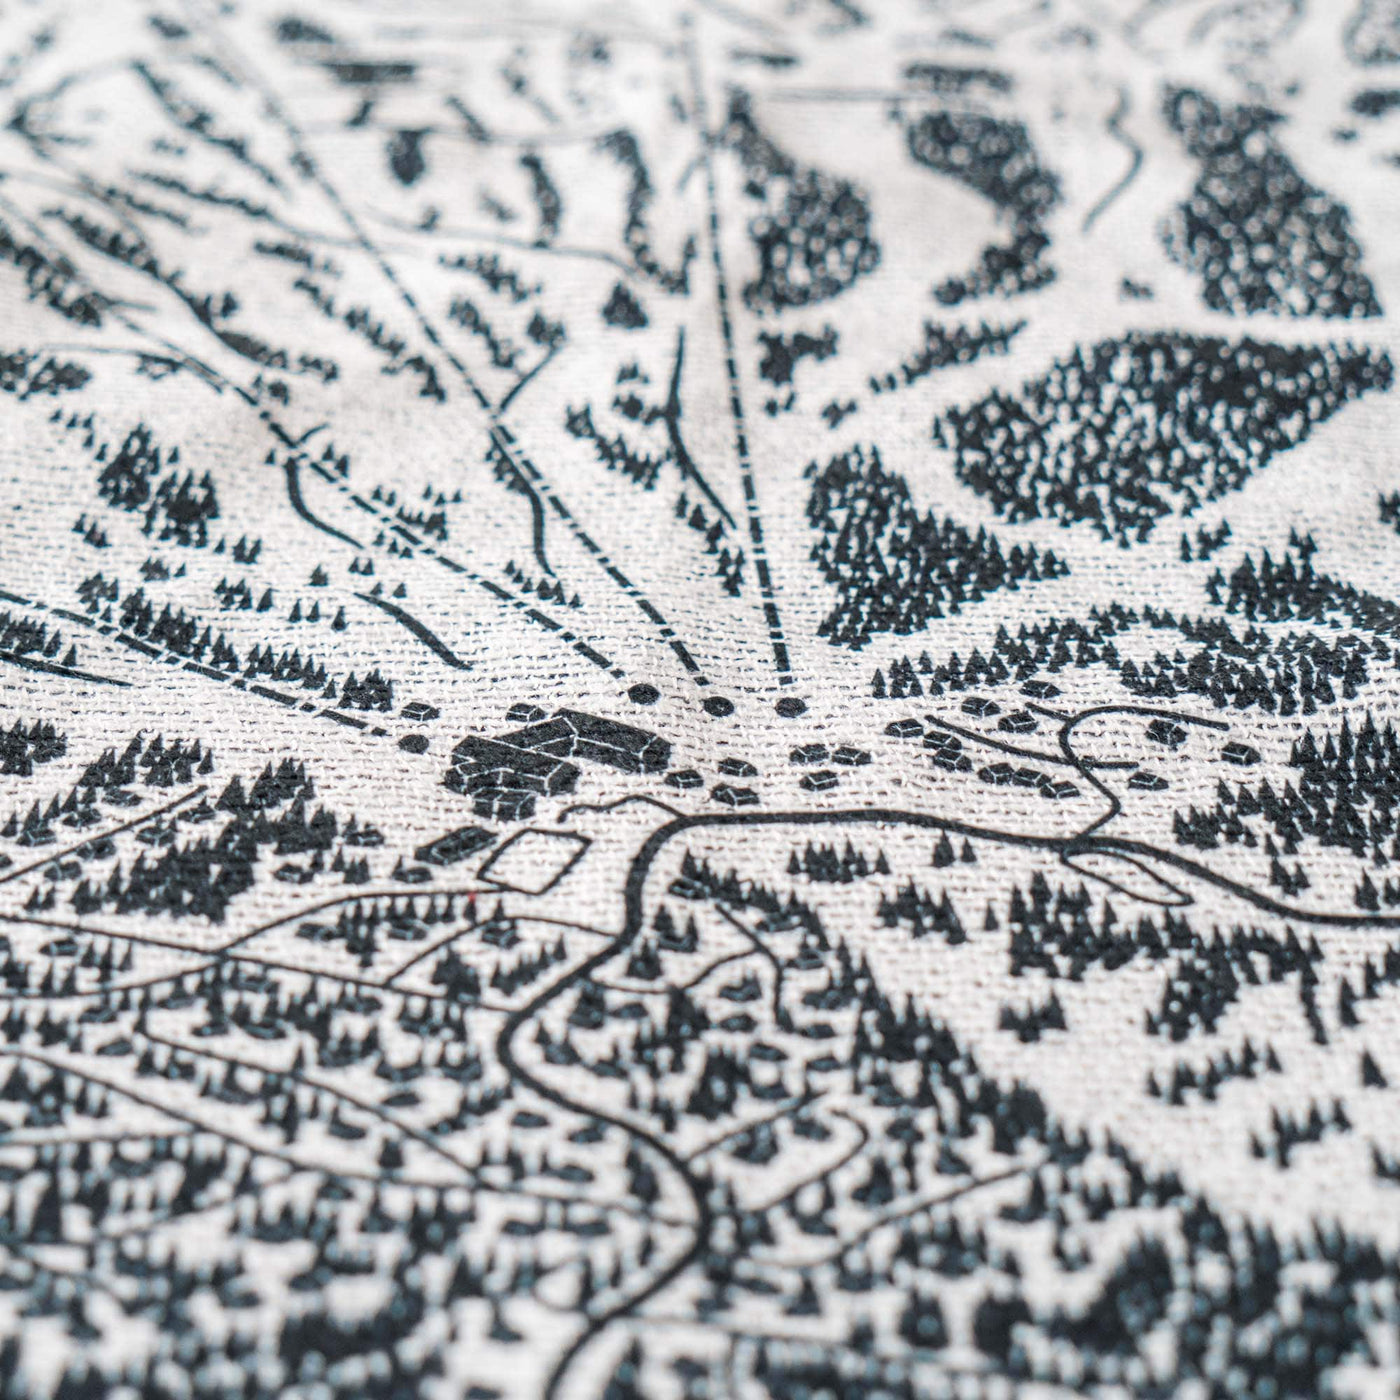 Mad River Glen, Vermont Ski Trail Map Blankets